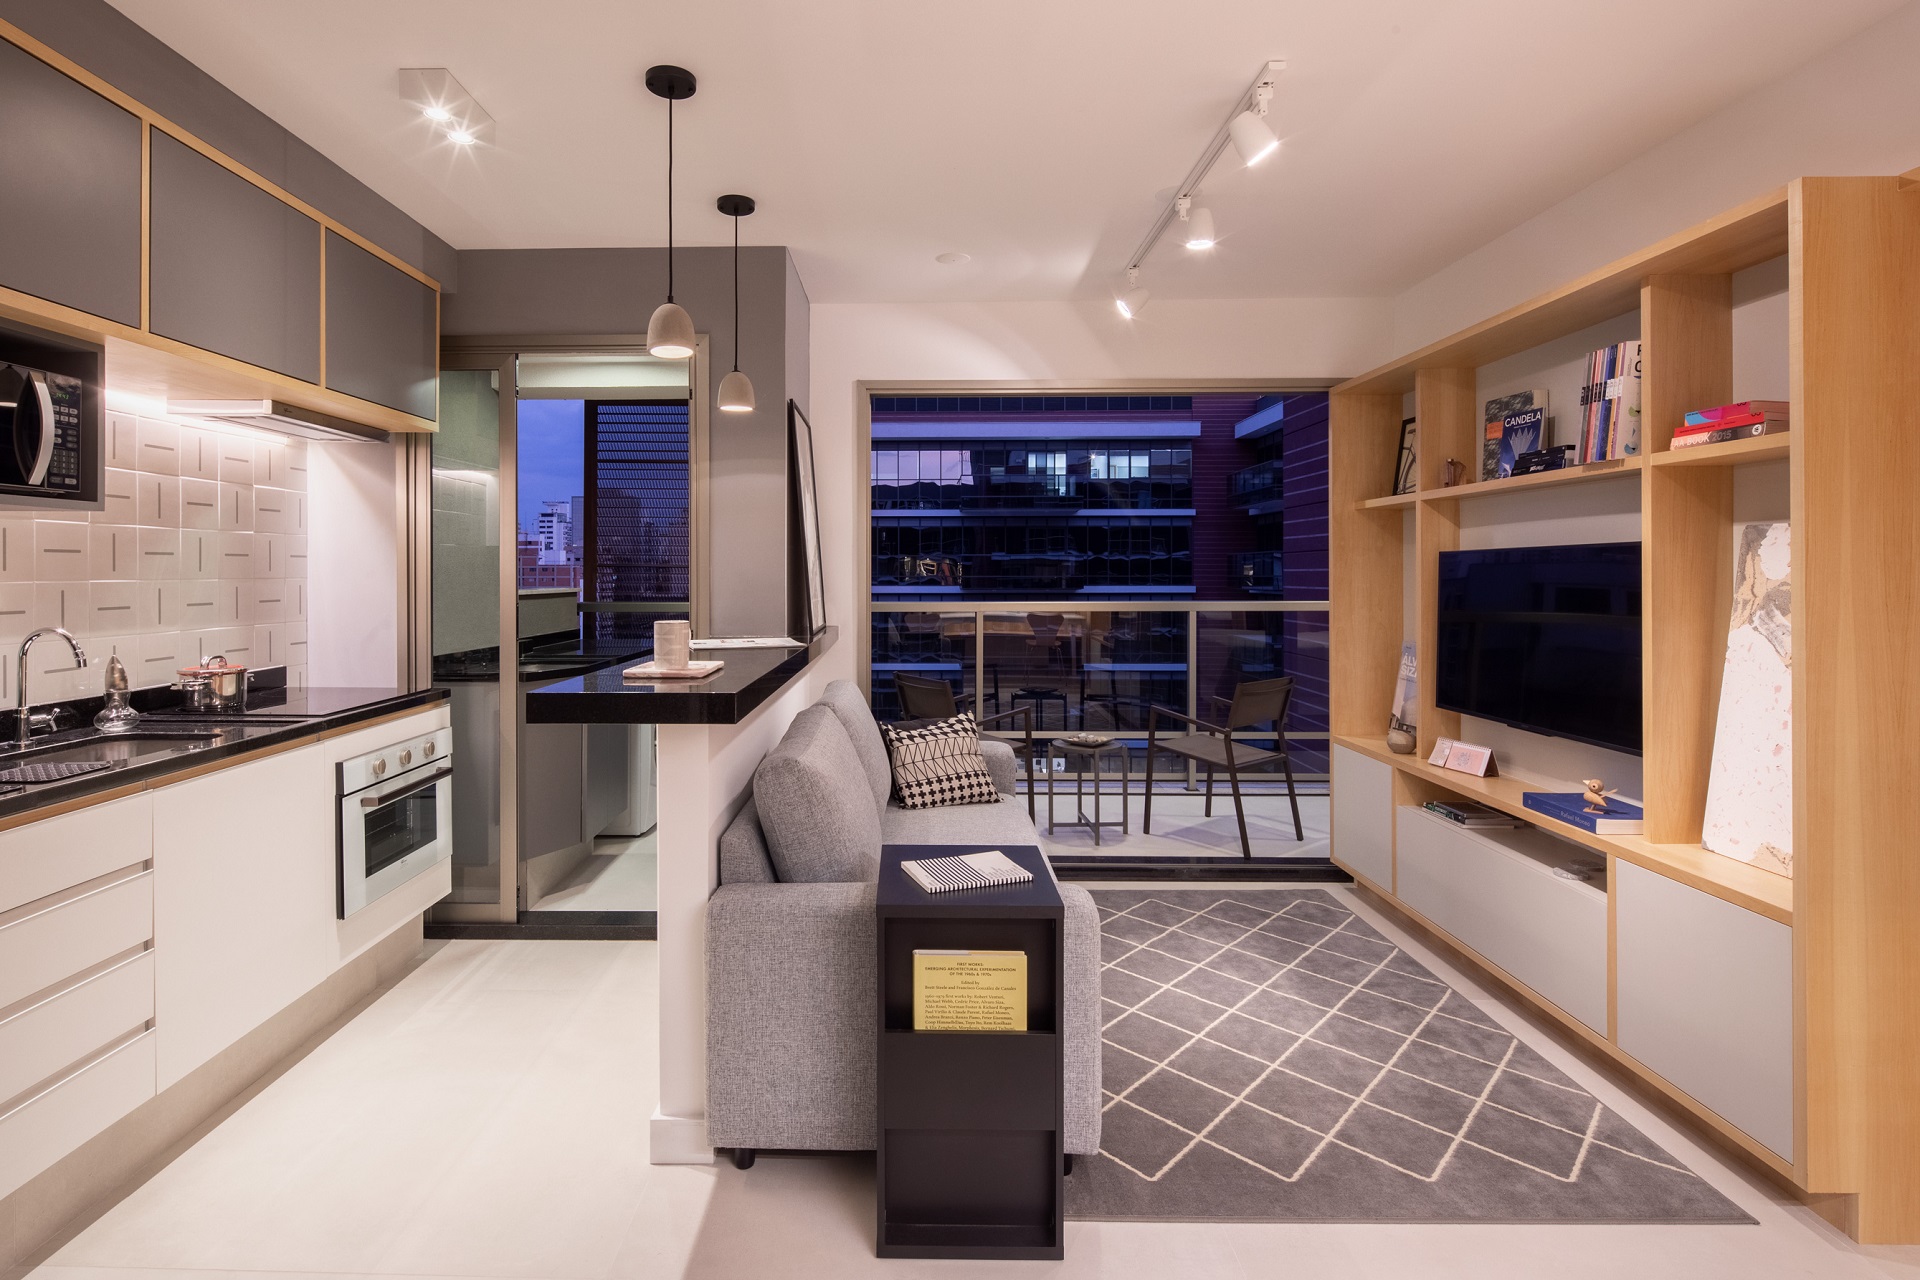 Cozinha e sala integradas em apartamento pequeno em tons neutros variados